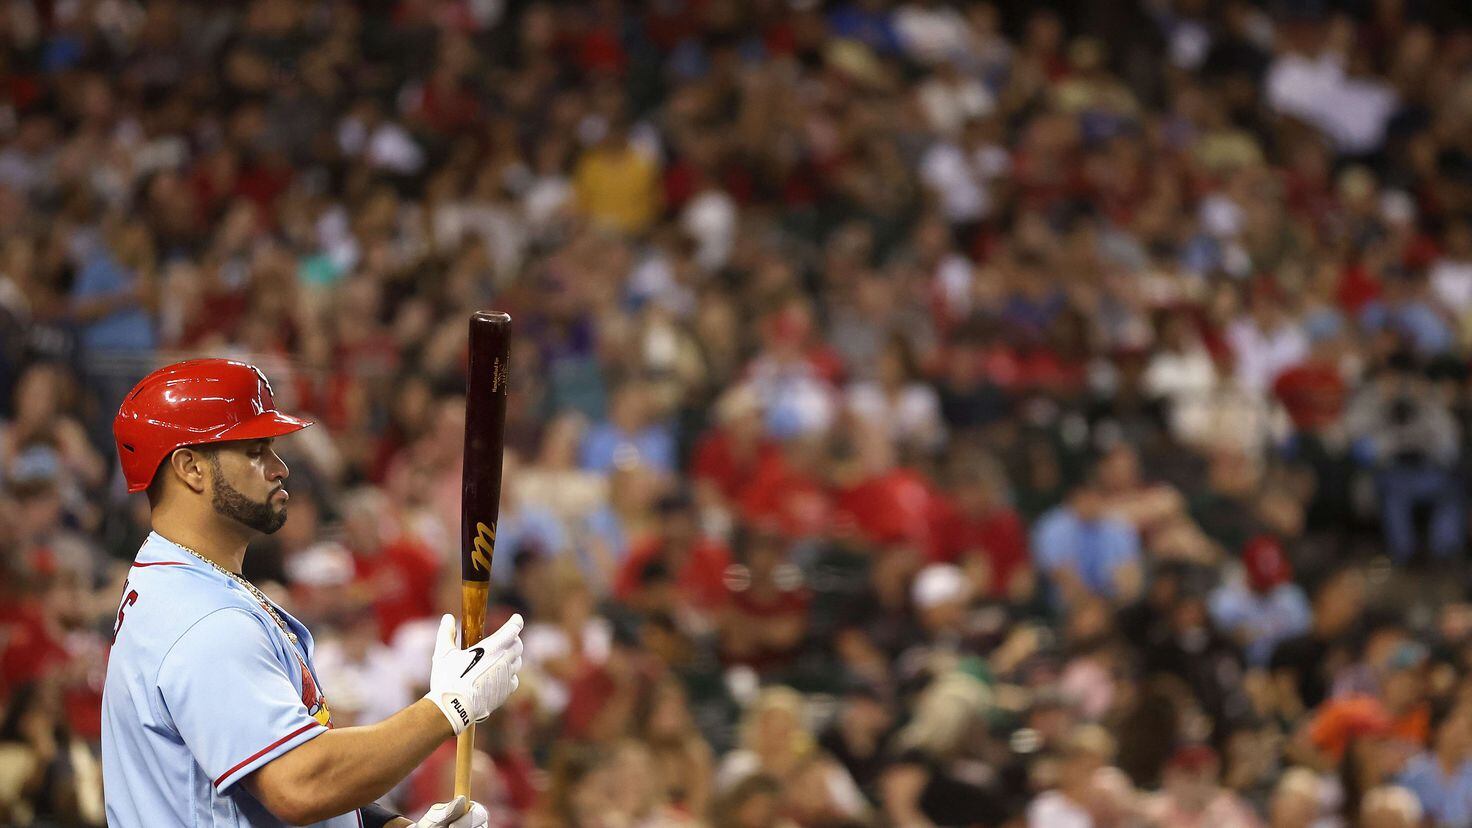 Albert Pujols close to making baseball history with 700 home runs